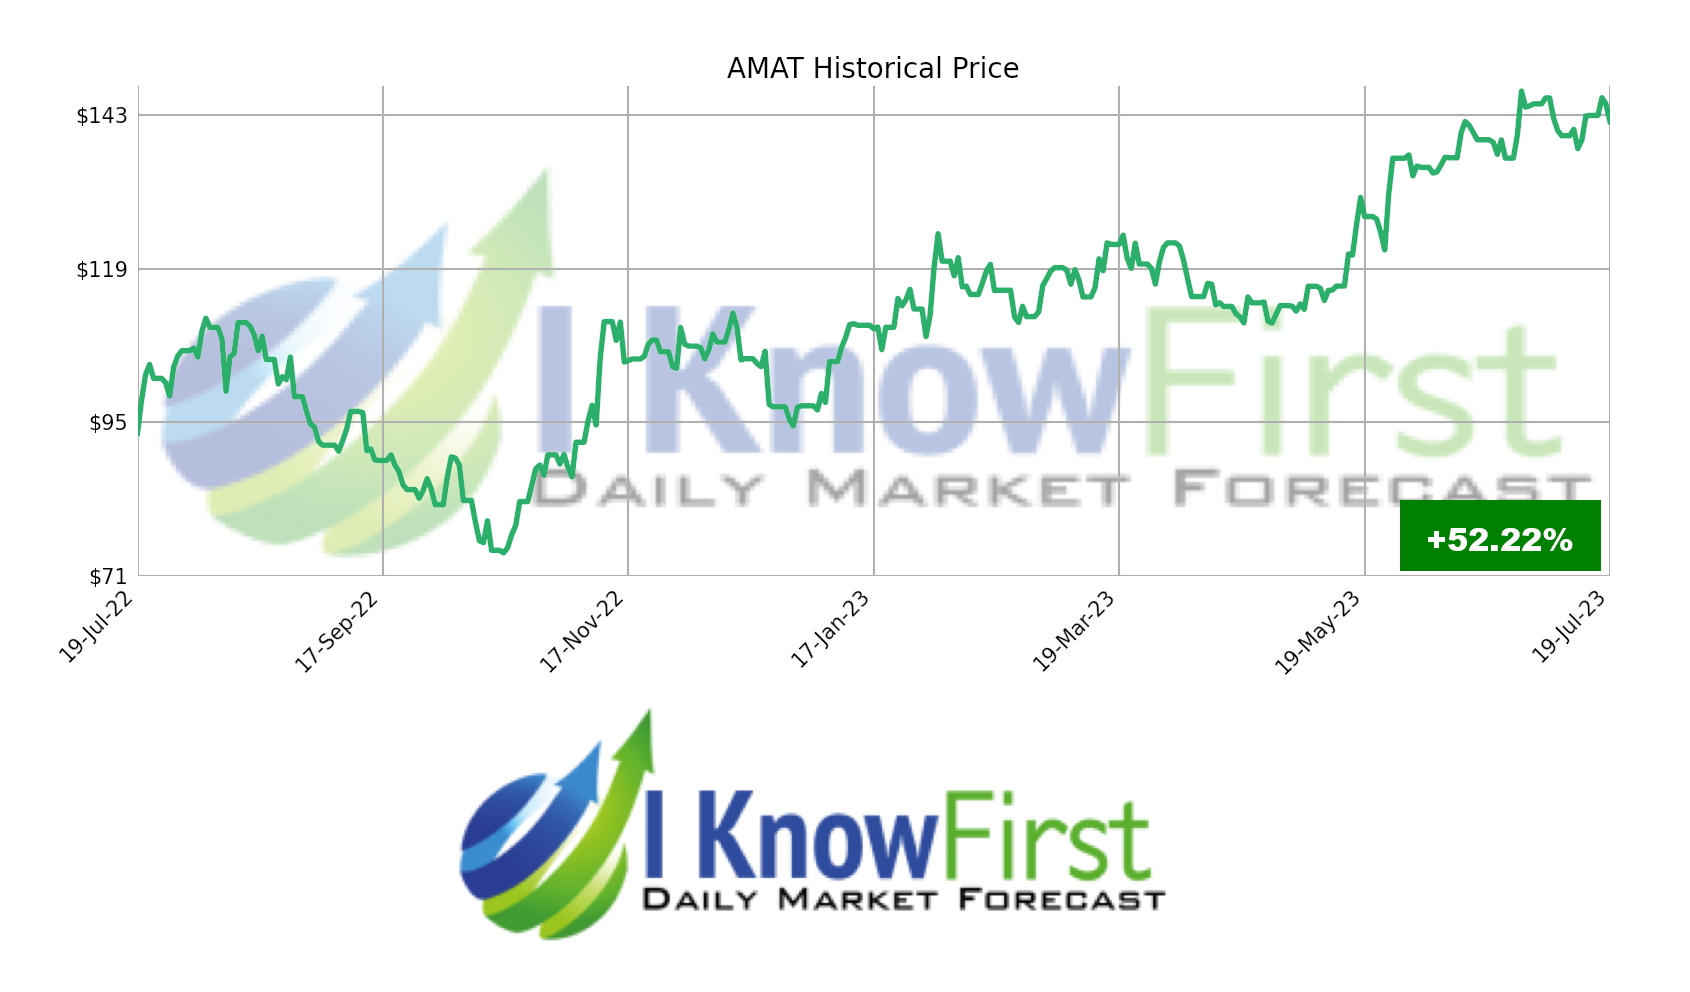 AMAT Stock Forecast: AMAT Historical Price